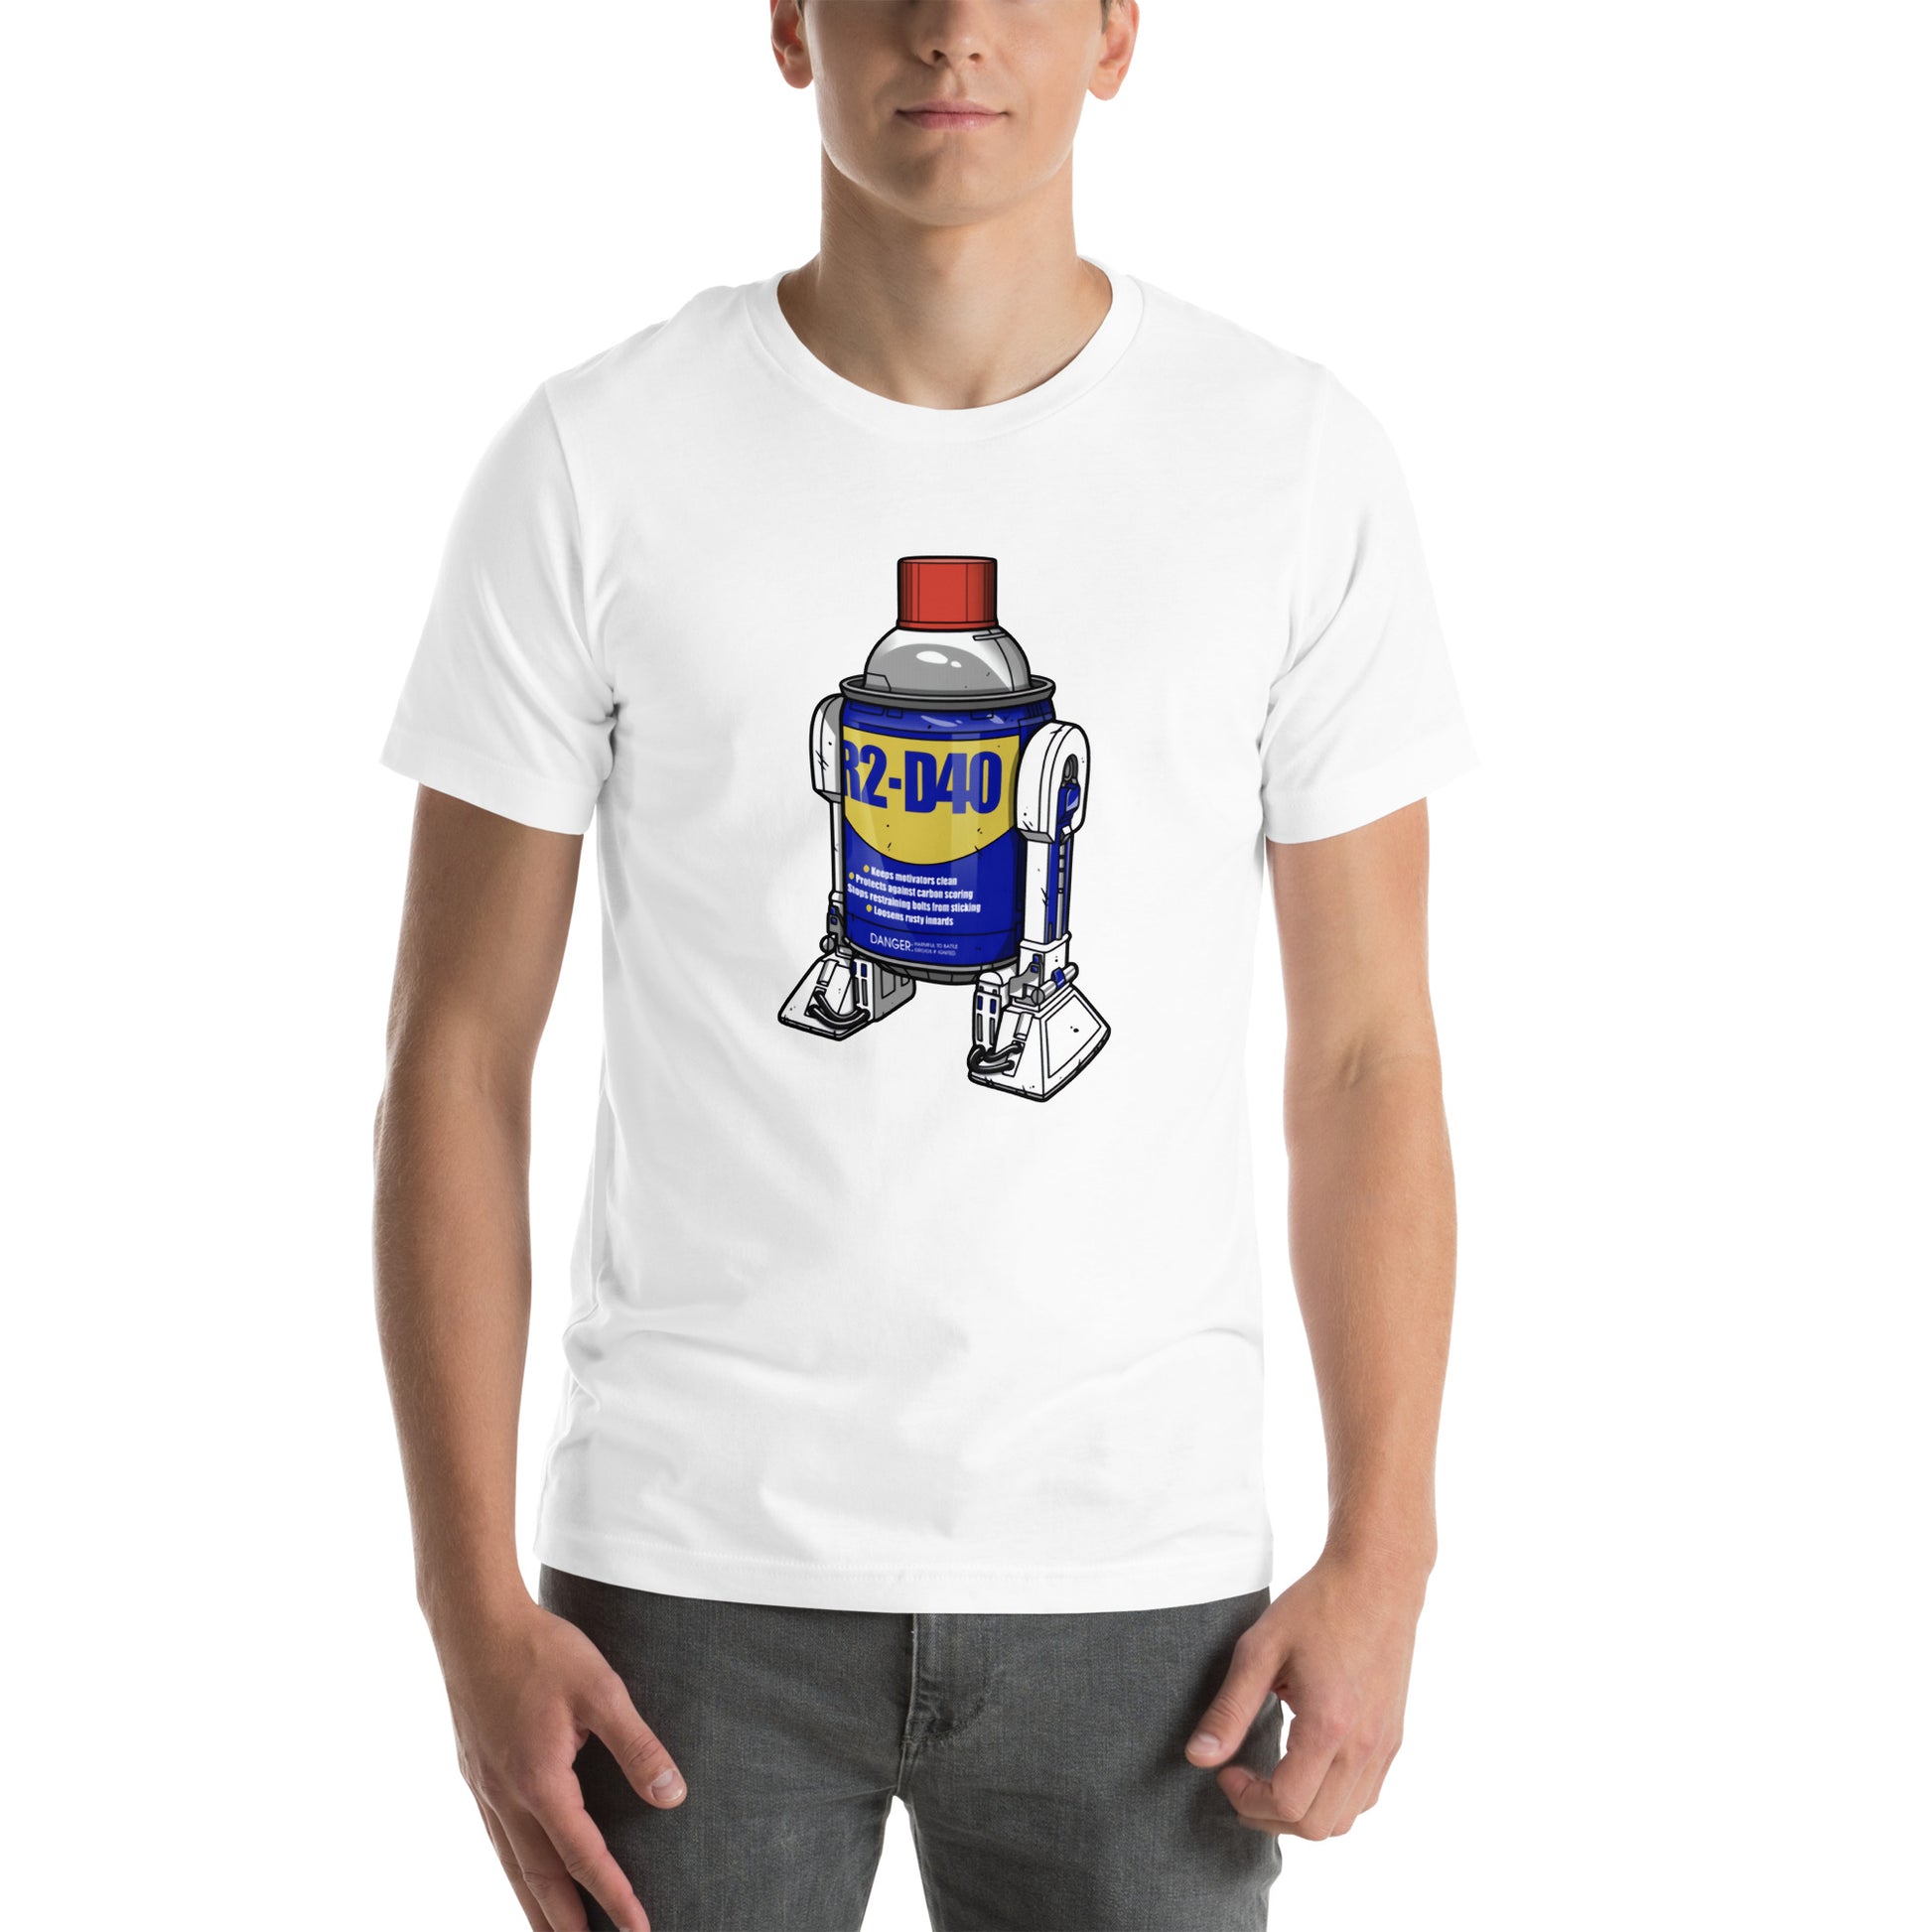 ¡Compra el mejor merchandising en Superstar! Encuentra diseños únicos y de alta calidad en playeras, Camiseta  R2-D40 compra online